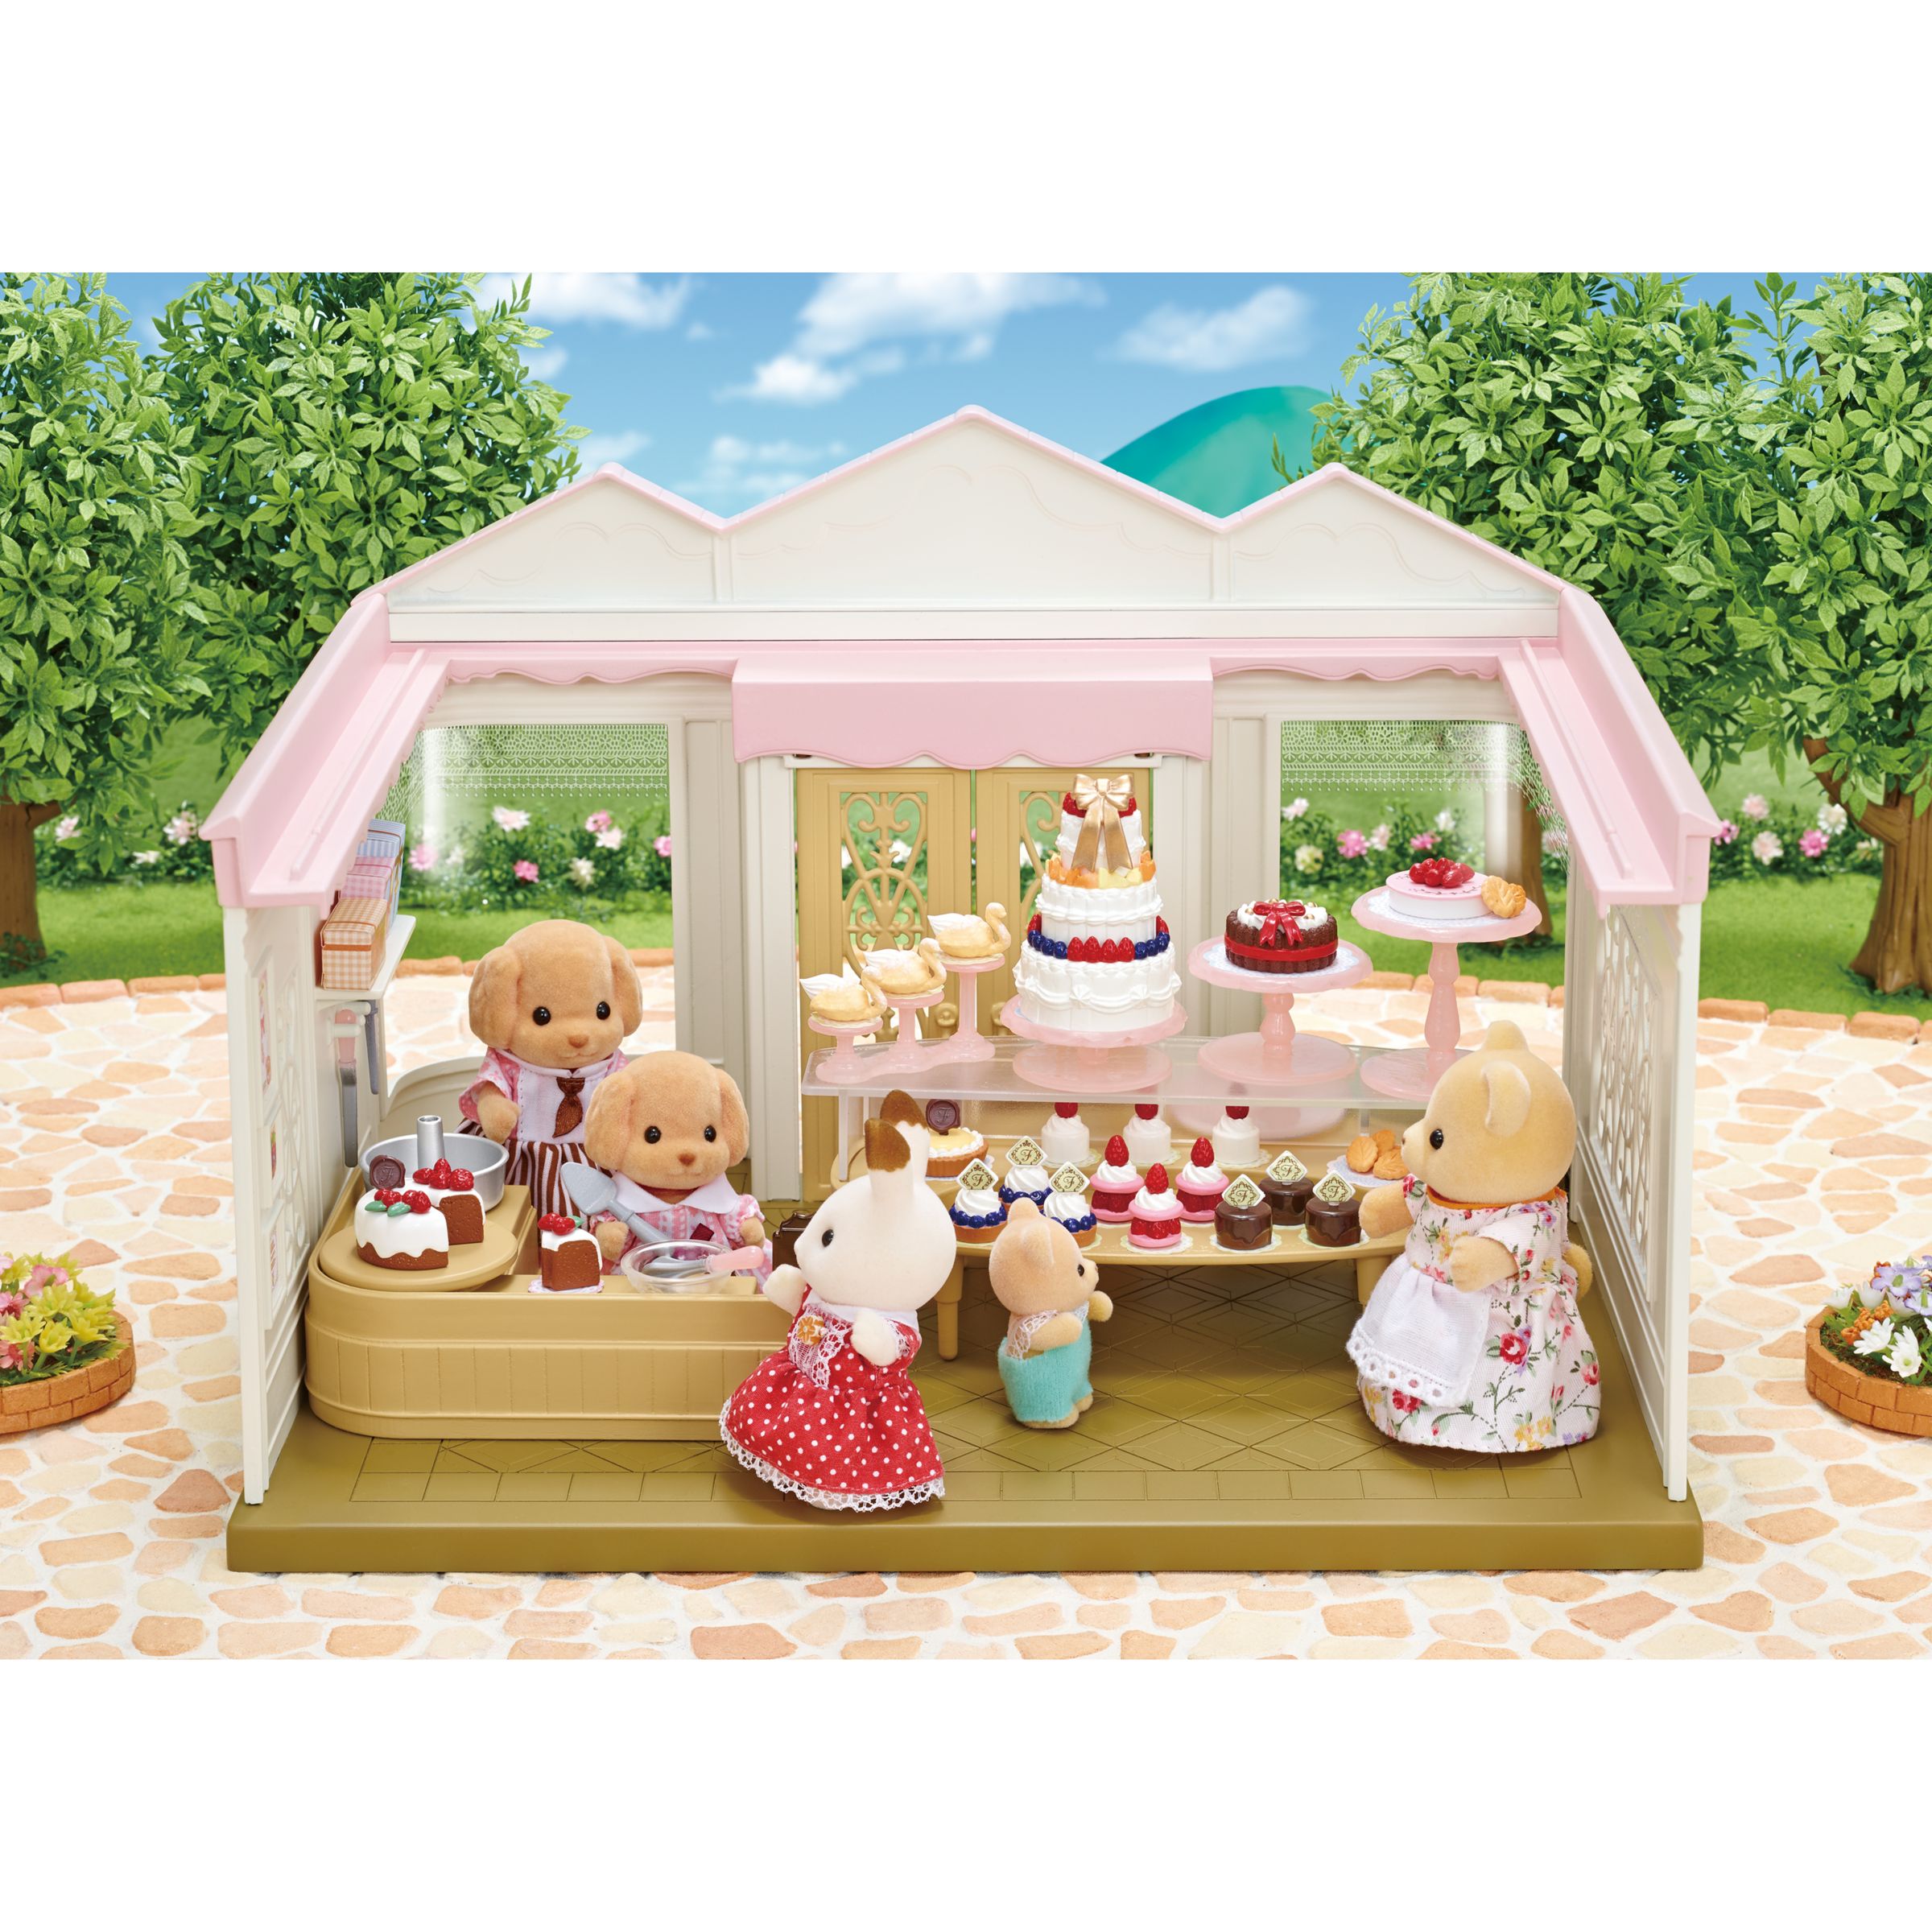 sylvanian families cake shop set